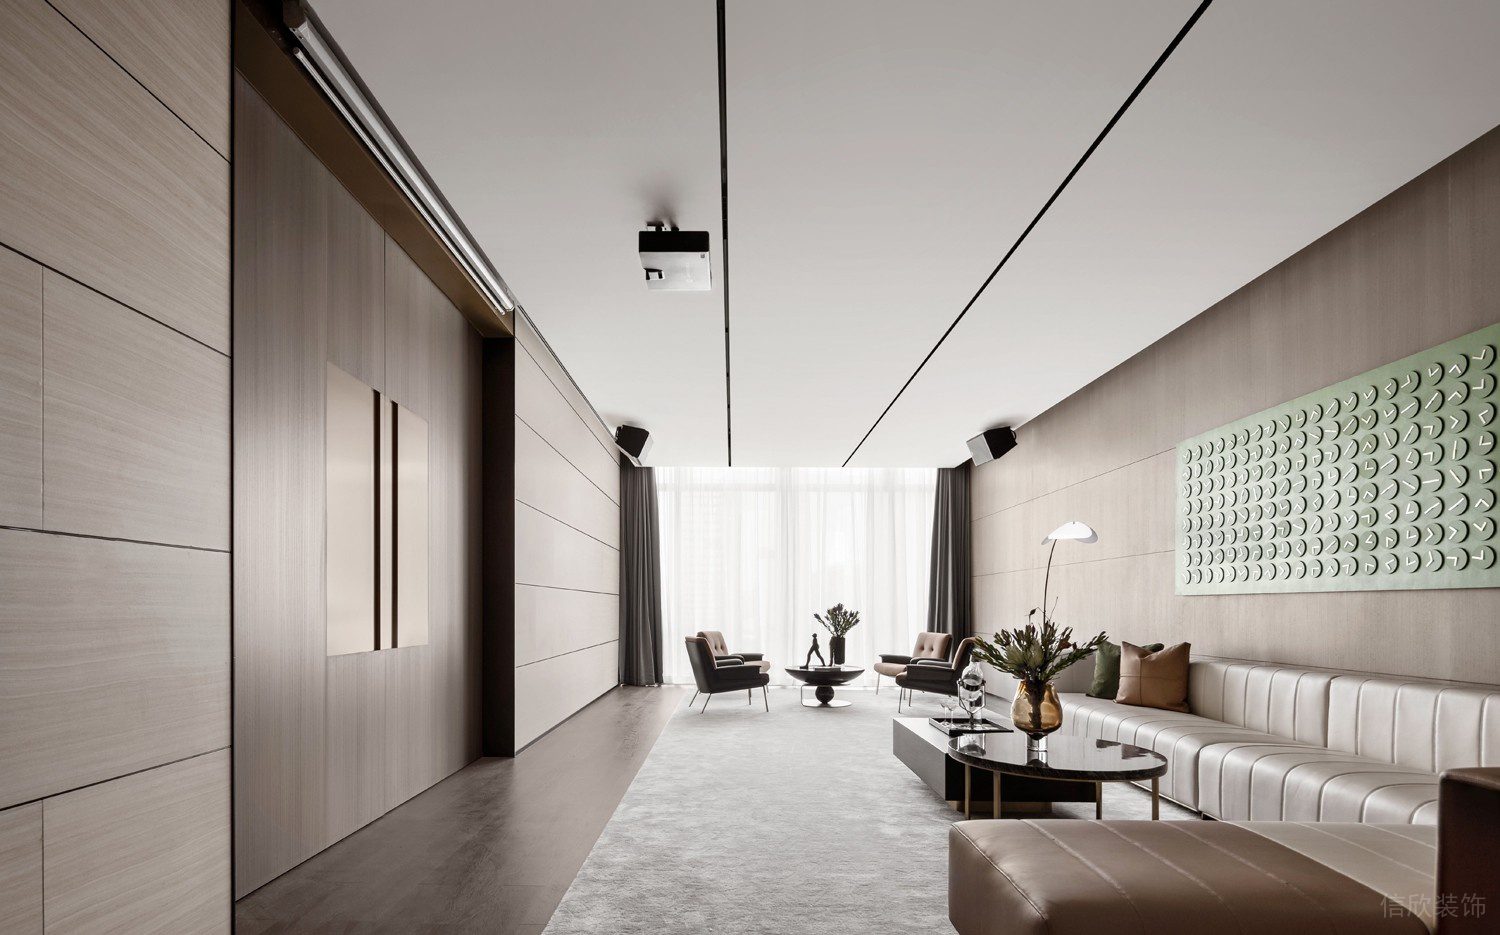 深圳南山思创科技大厦680平方米简约轻奢风办公室装修案例会客室